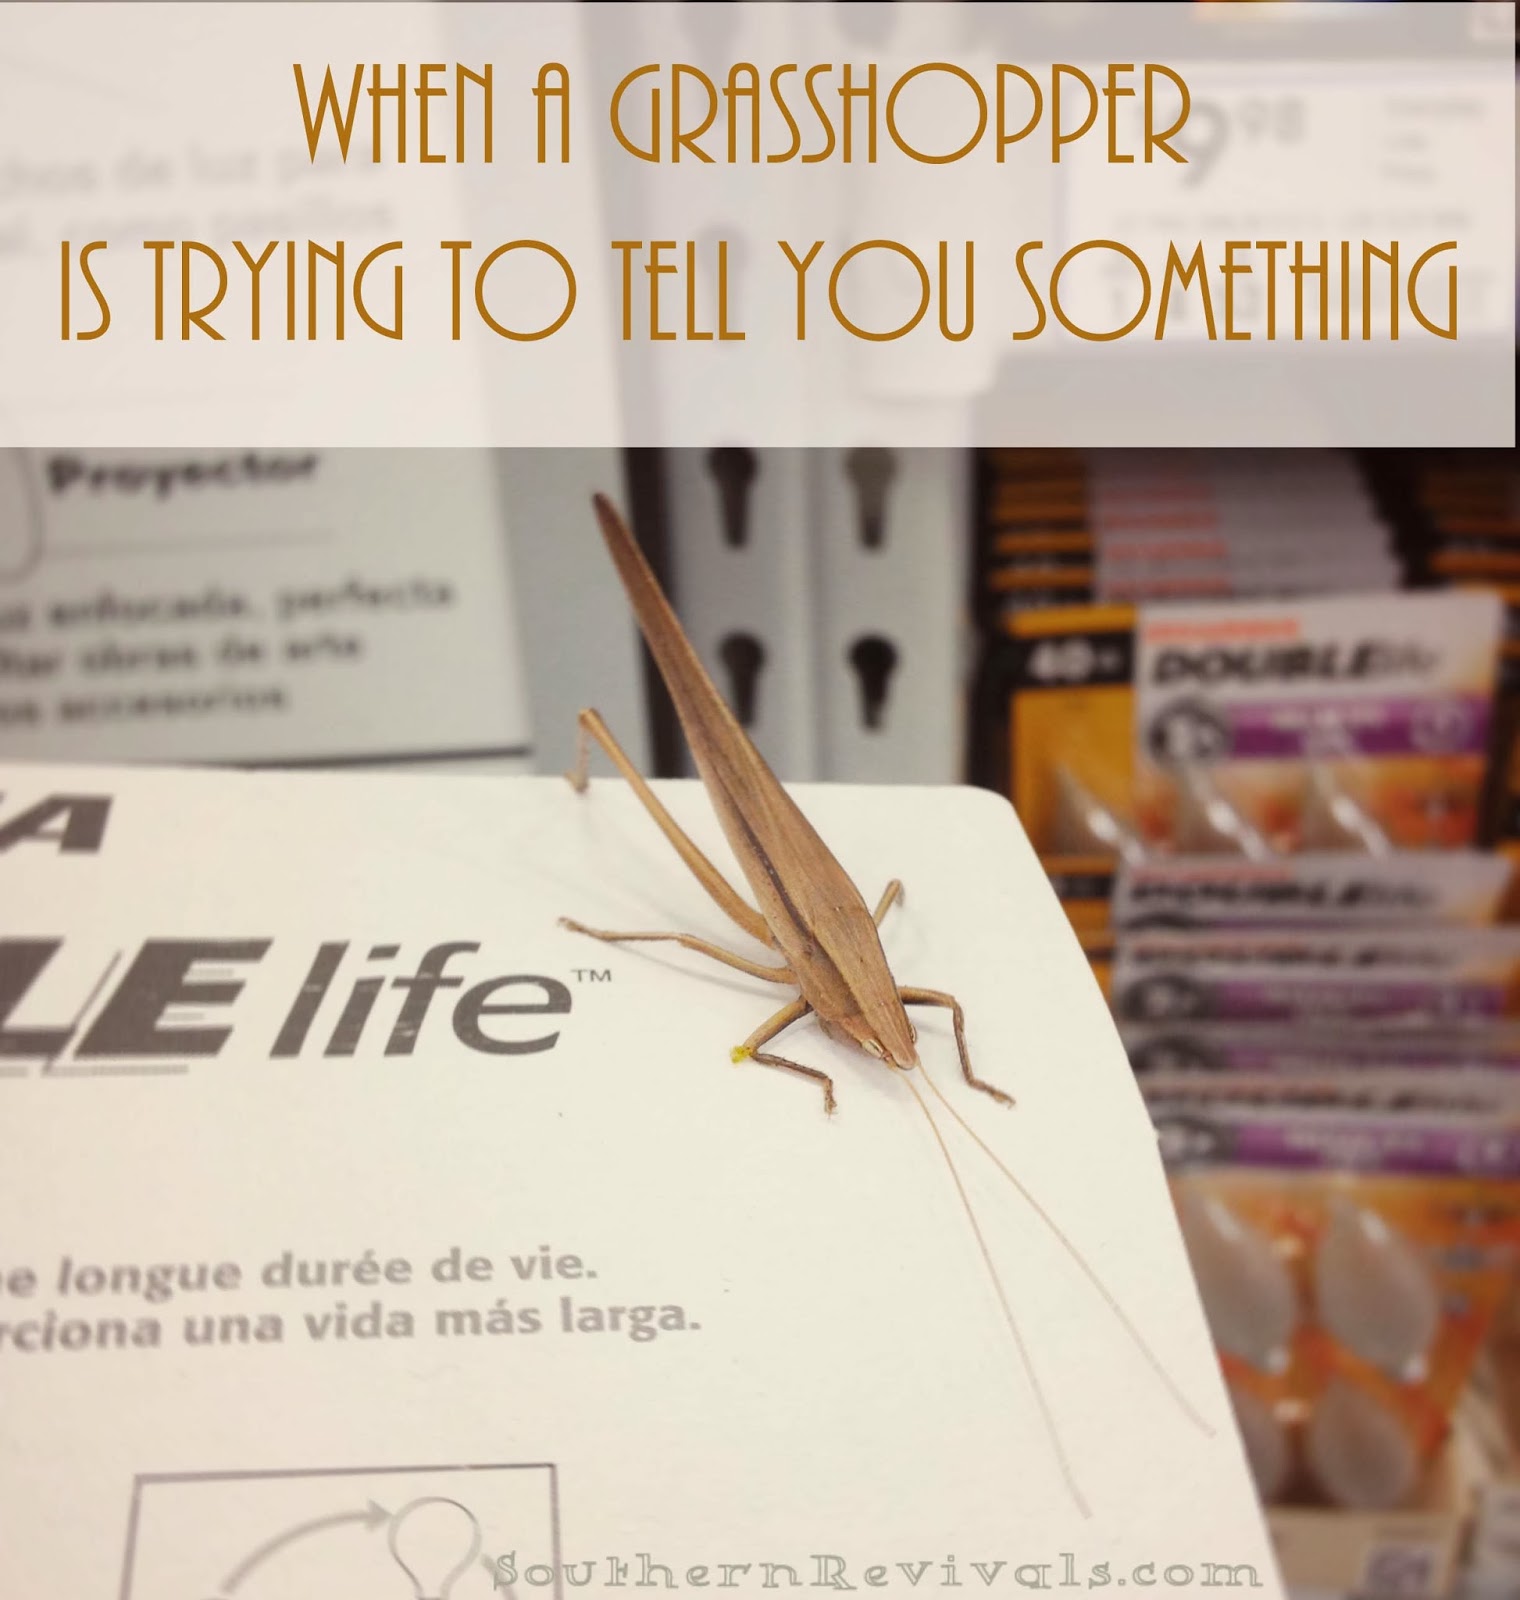 Grasshoppers Quotes. QuotesGram